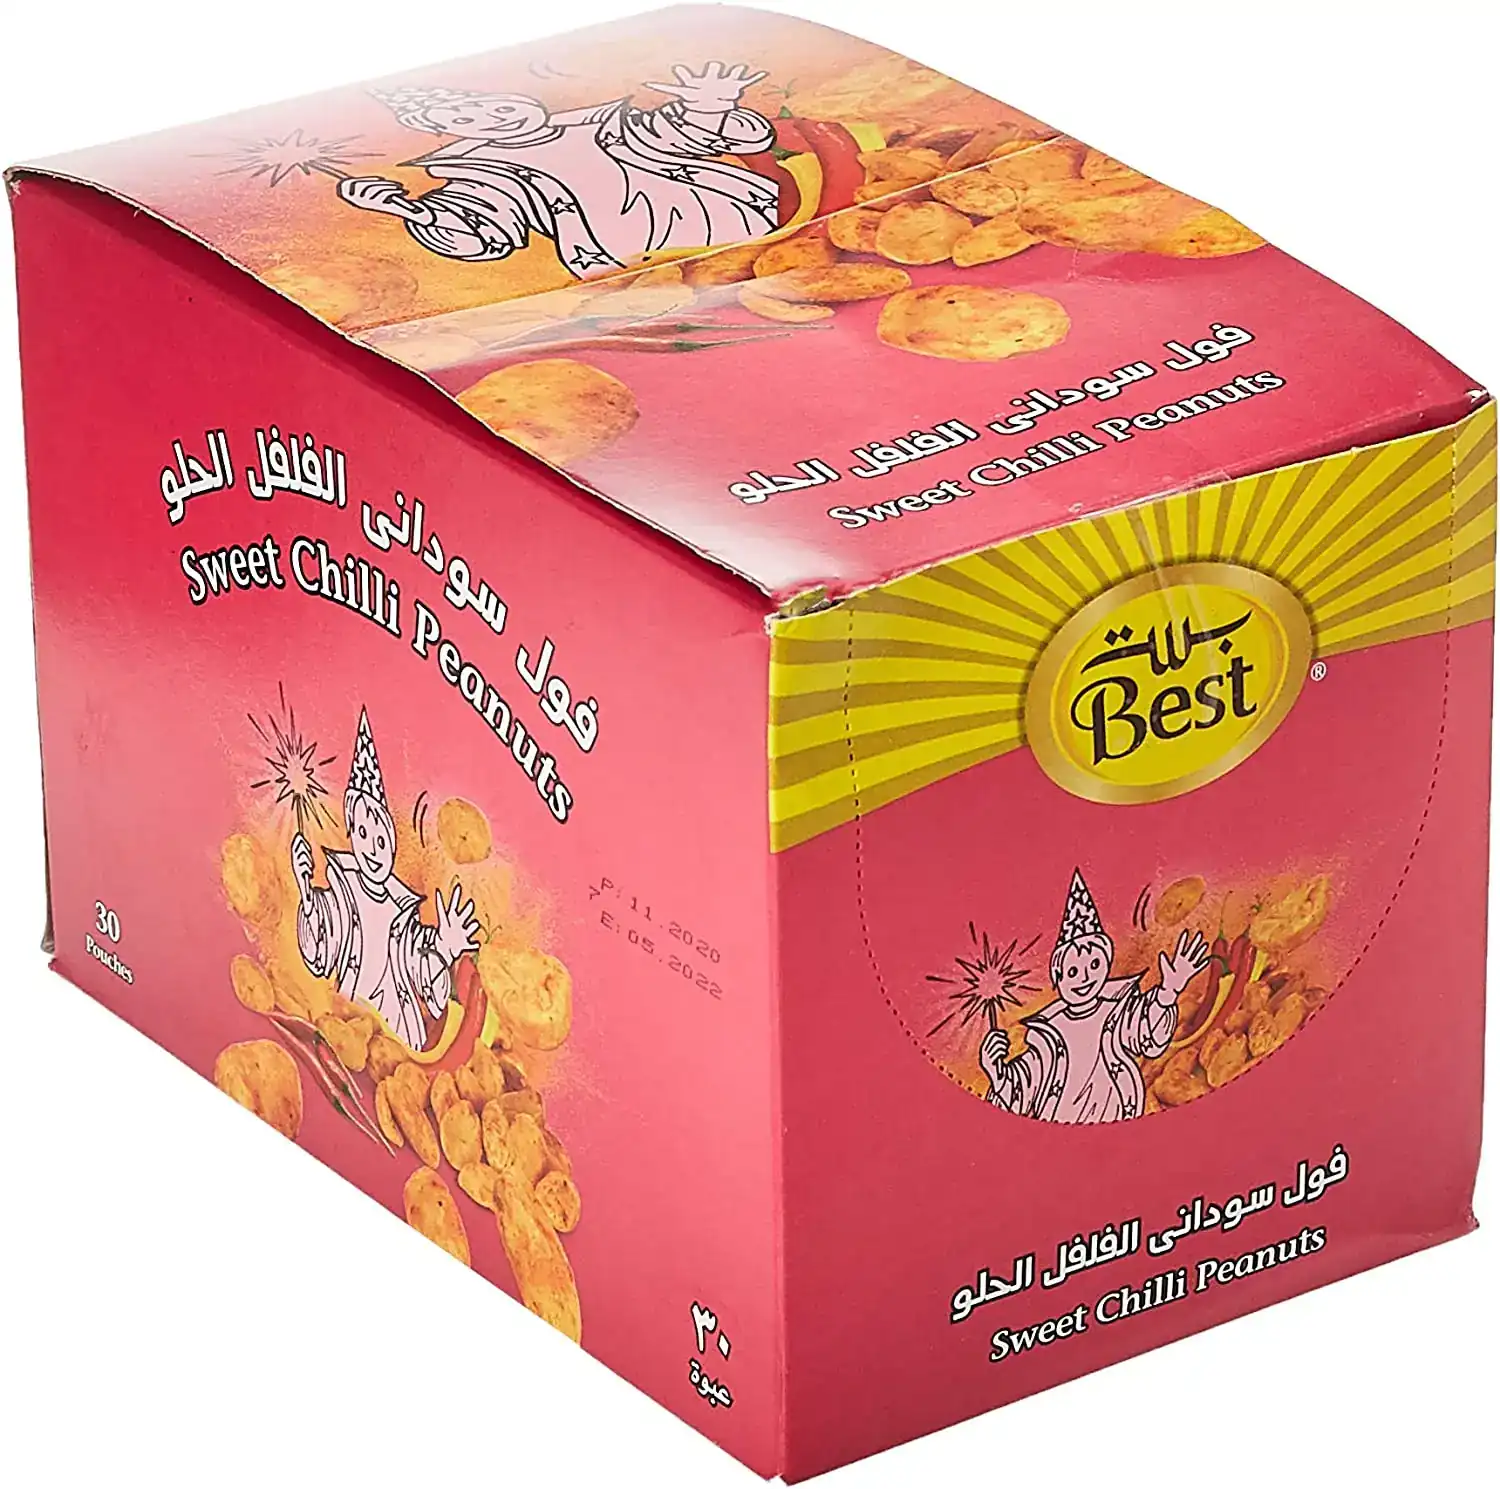 Best Peanuts Sweet Chilli 13gm Box 30pcs - 0 (JBI452969)